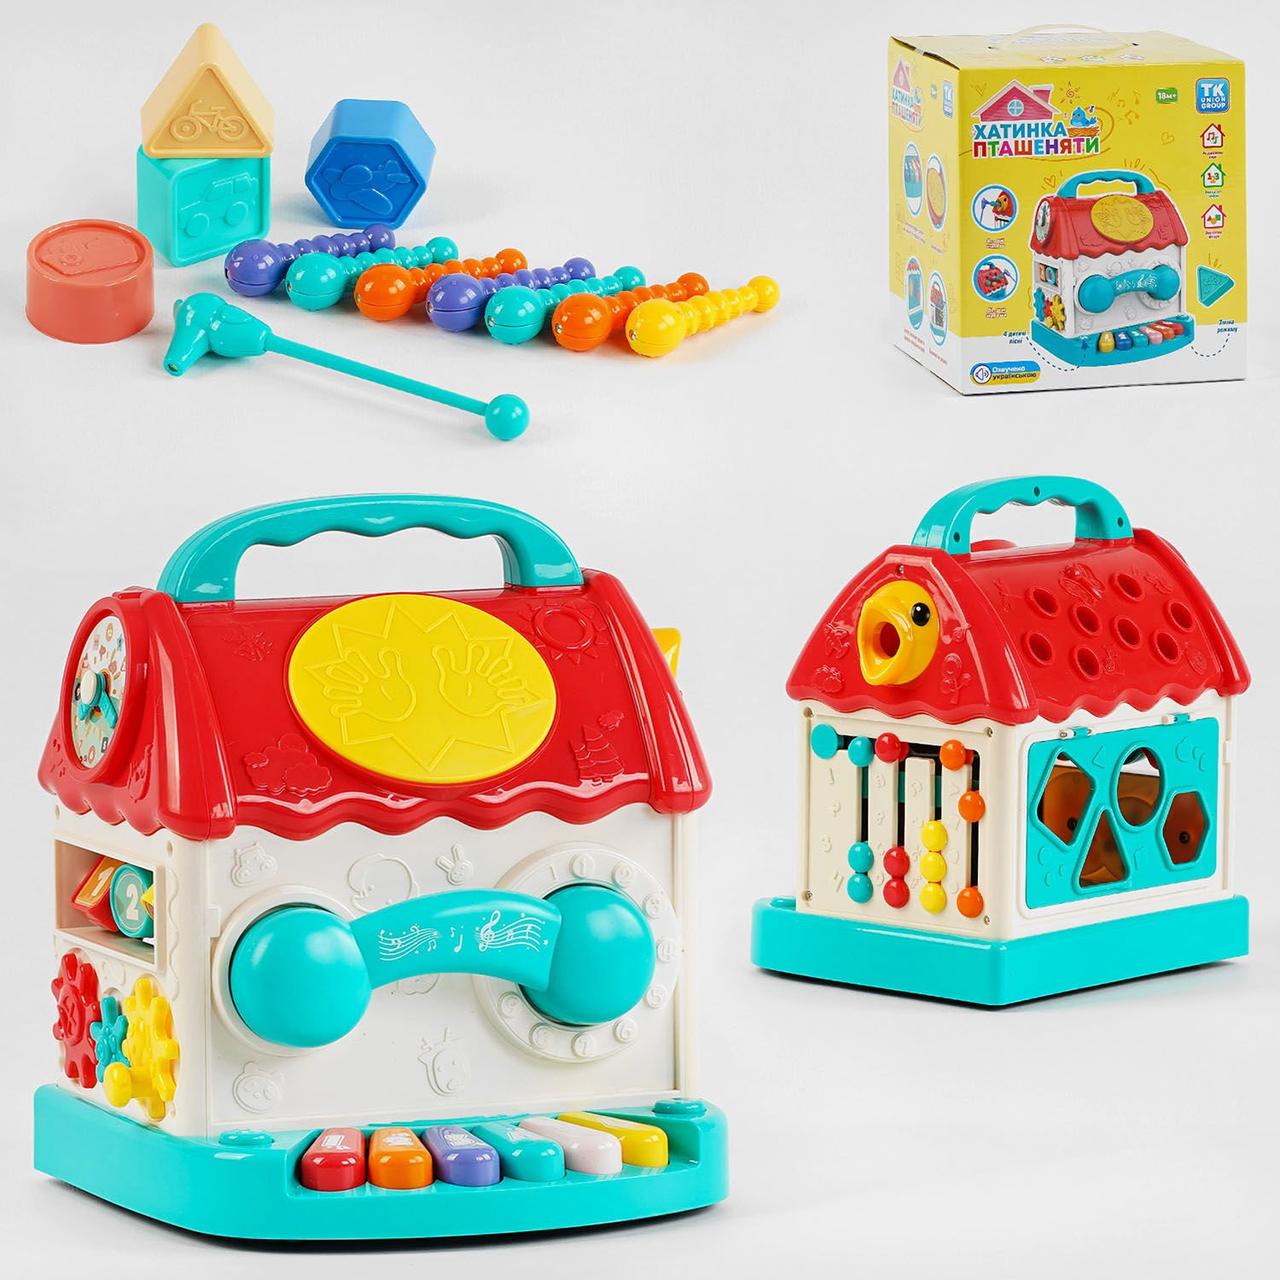 Іграшка для малюків Будиночок розвивальний зі сортером ( форми, кольори, звуки)